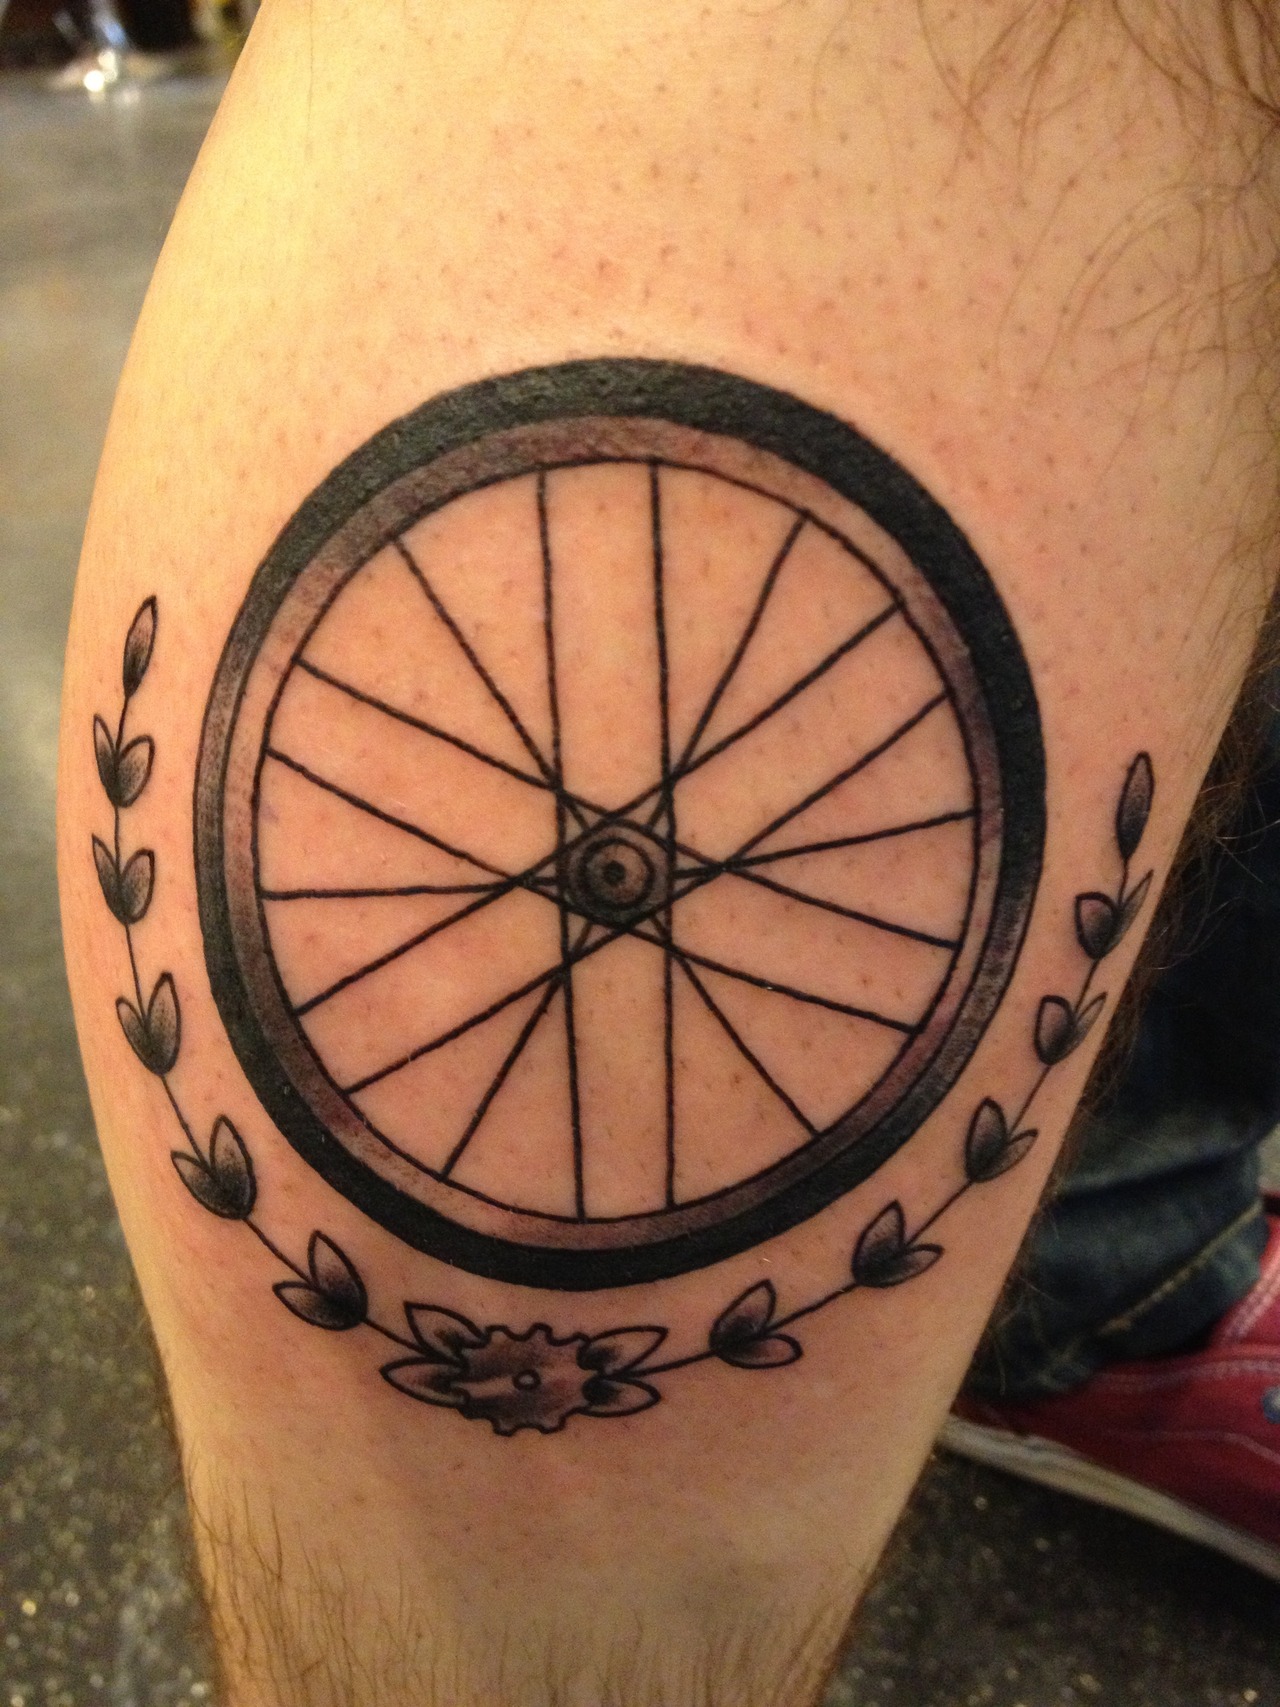 Bike wheel tattoo